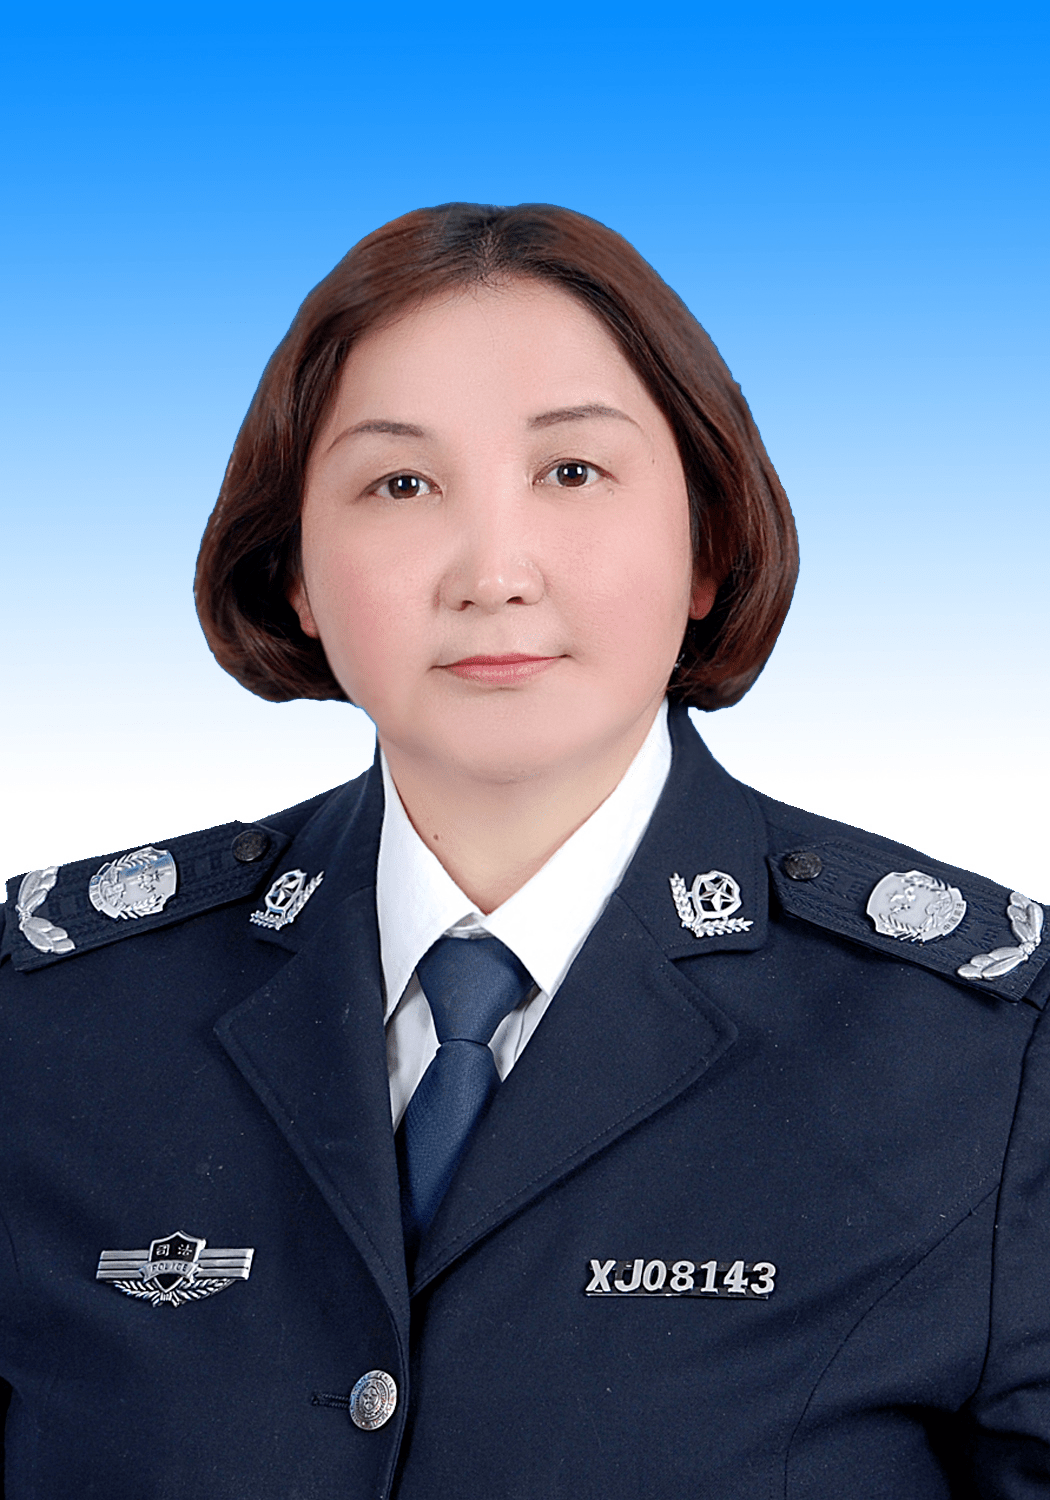 1972年出生,新疆维吾尔自治区富蕴县可可托海镇政协工委副主任,司法所